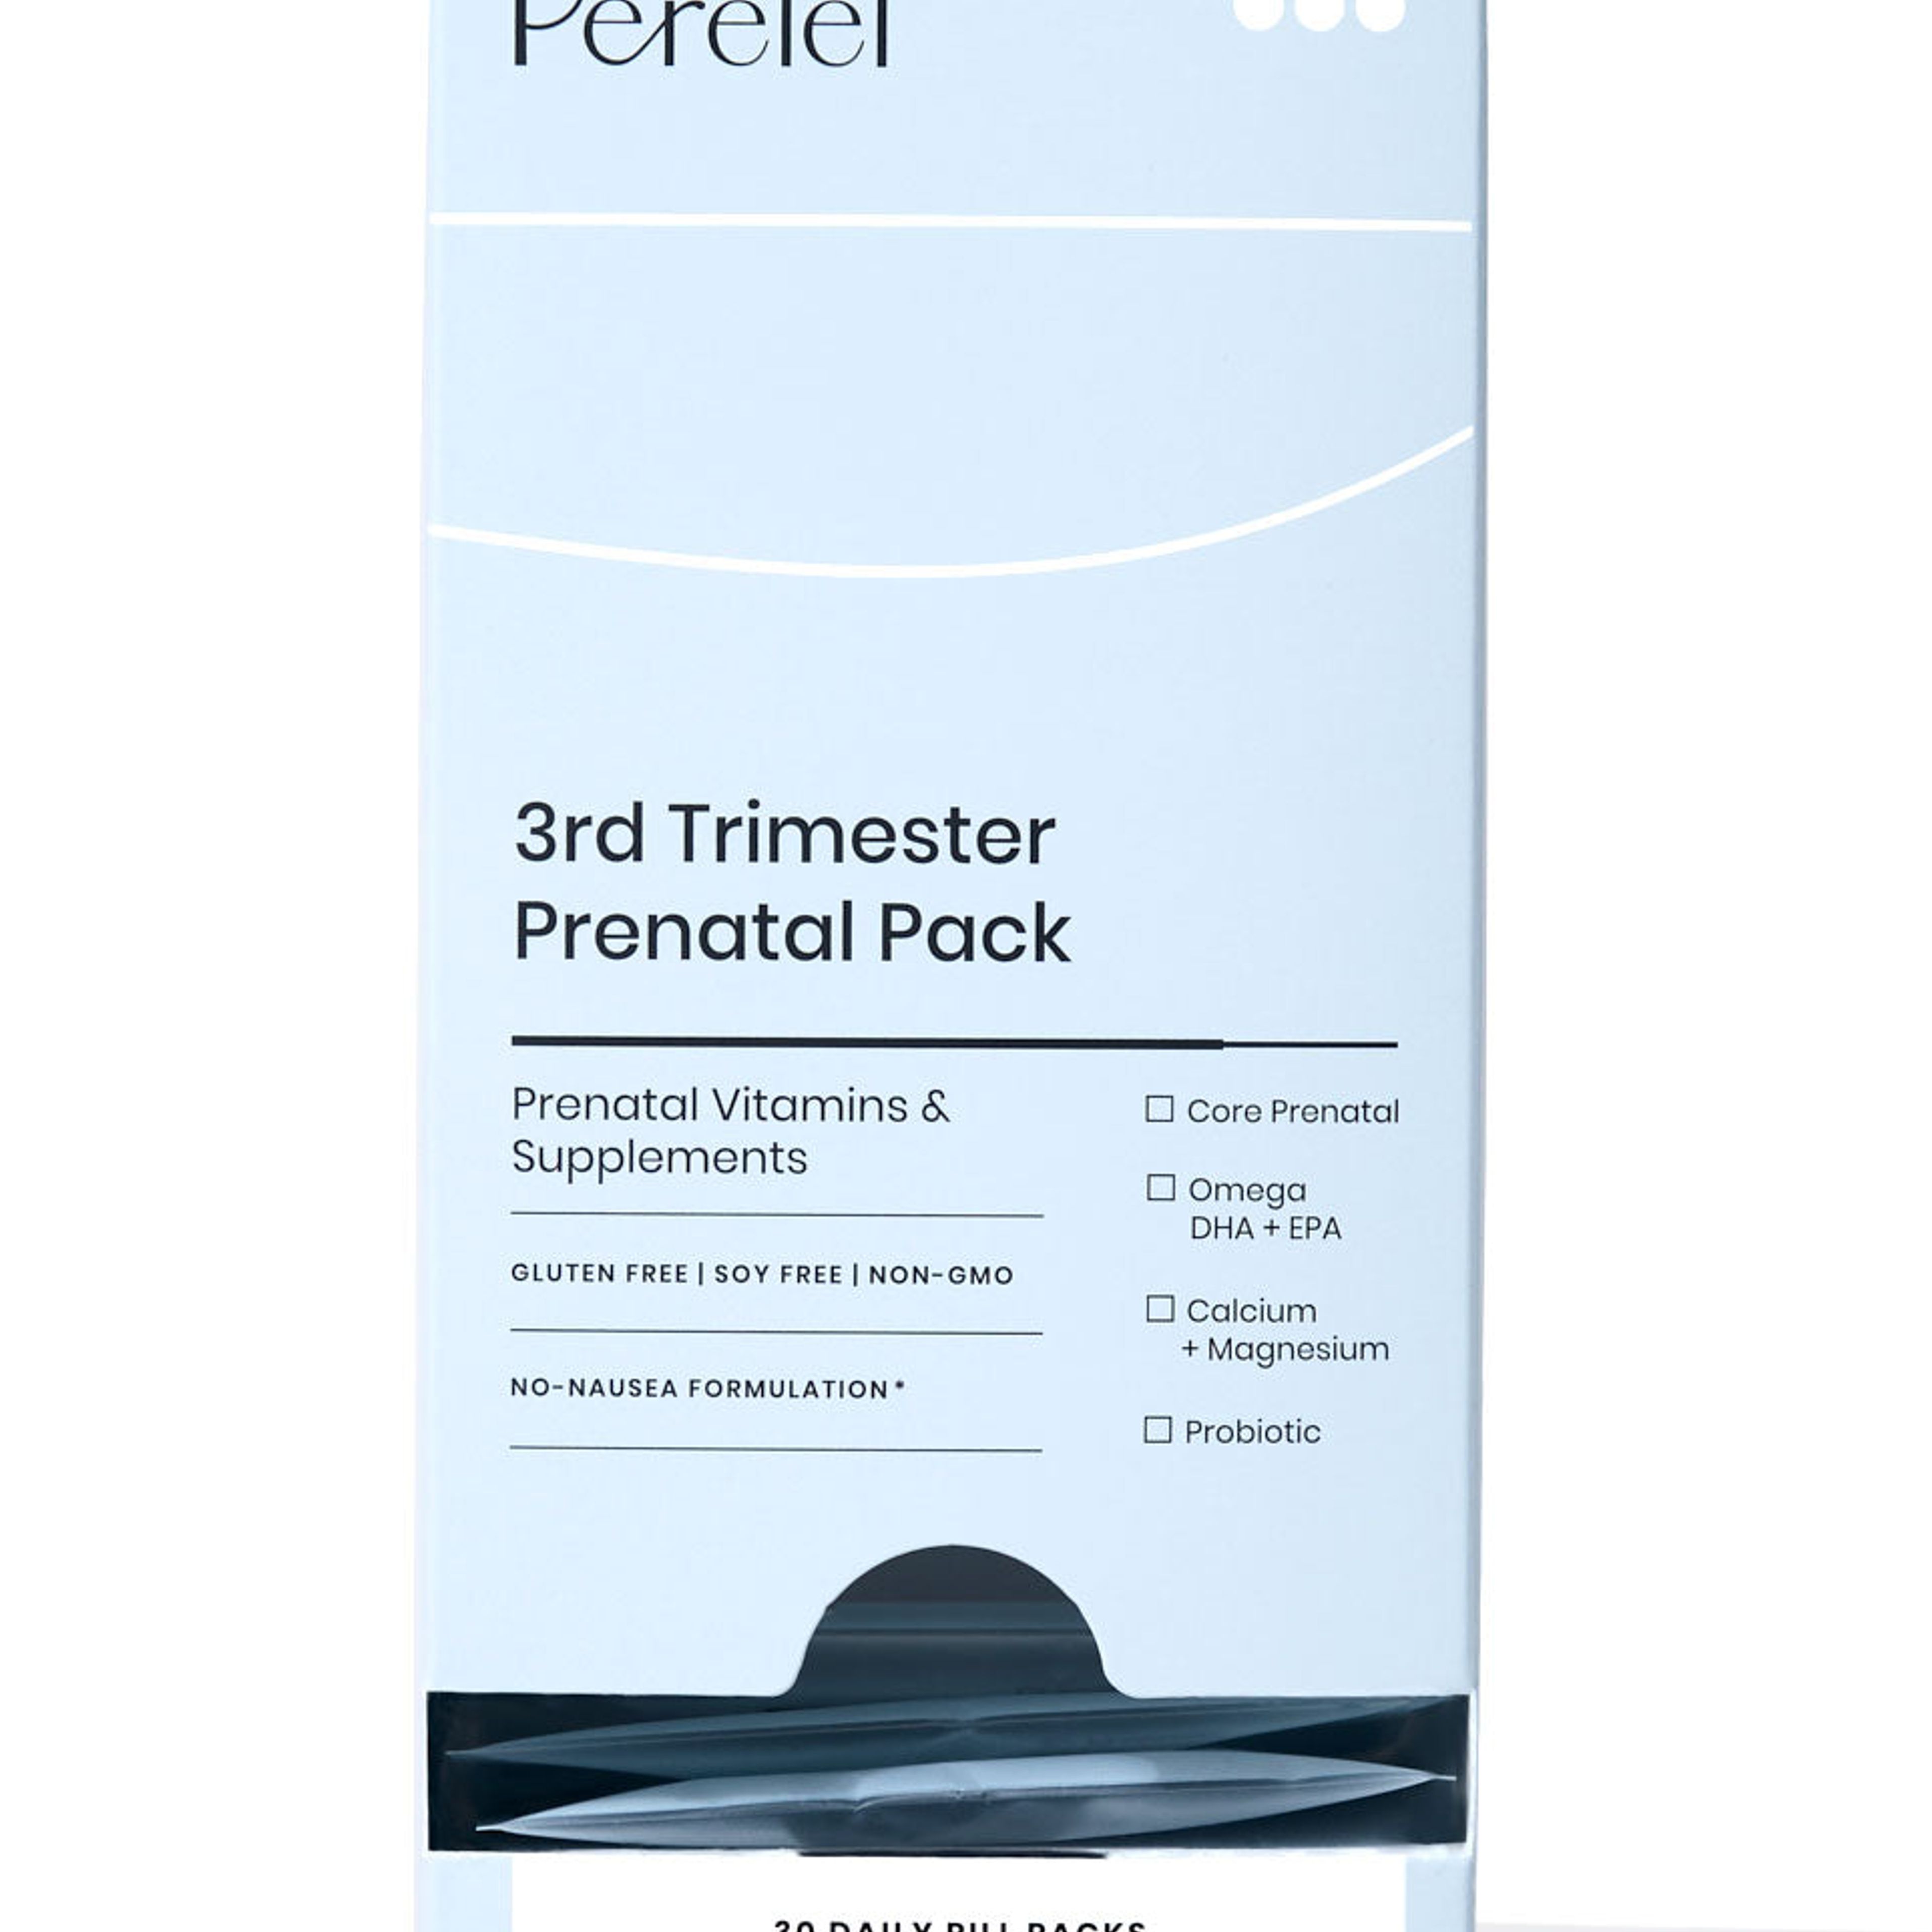 3rd Trimester Prenatal Pack